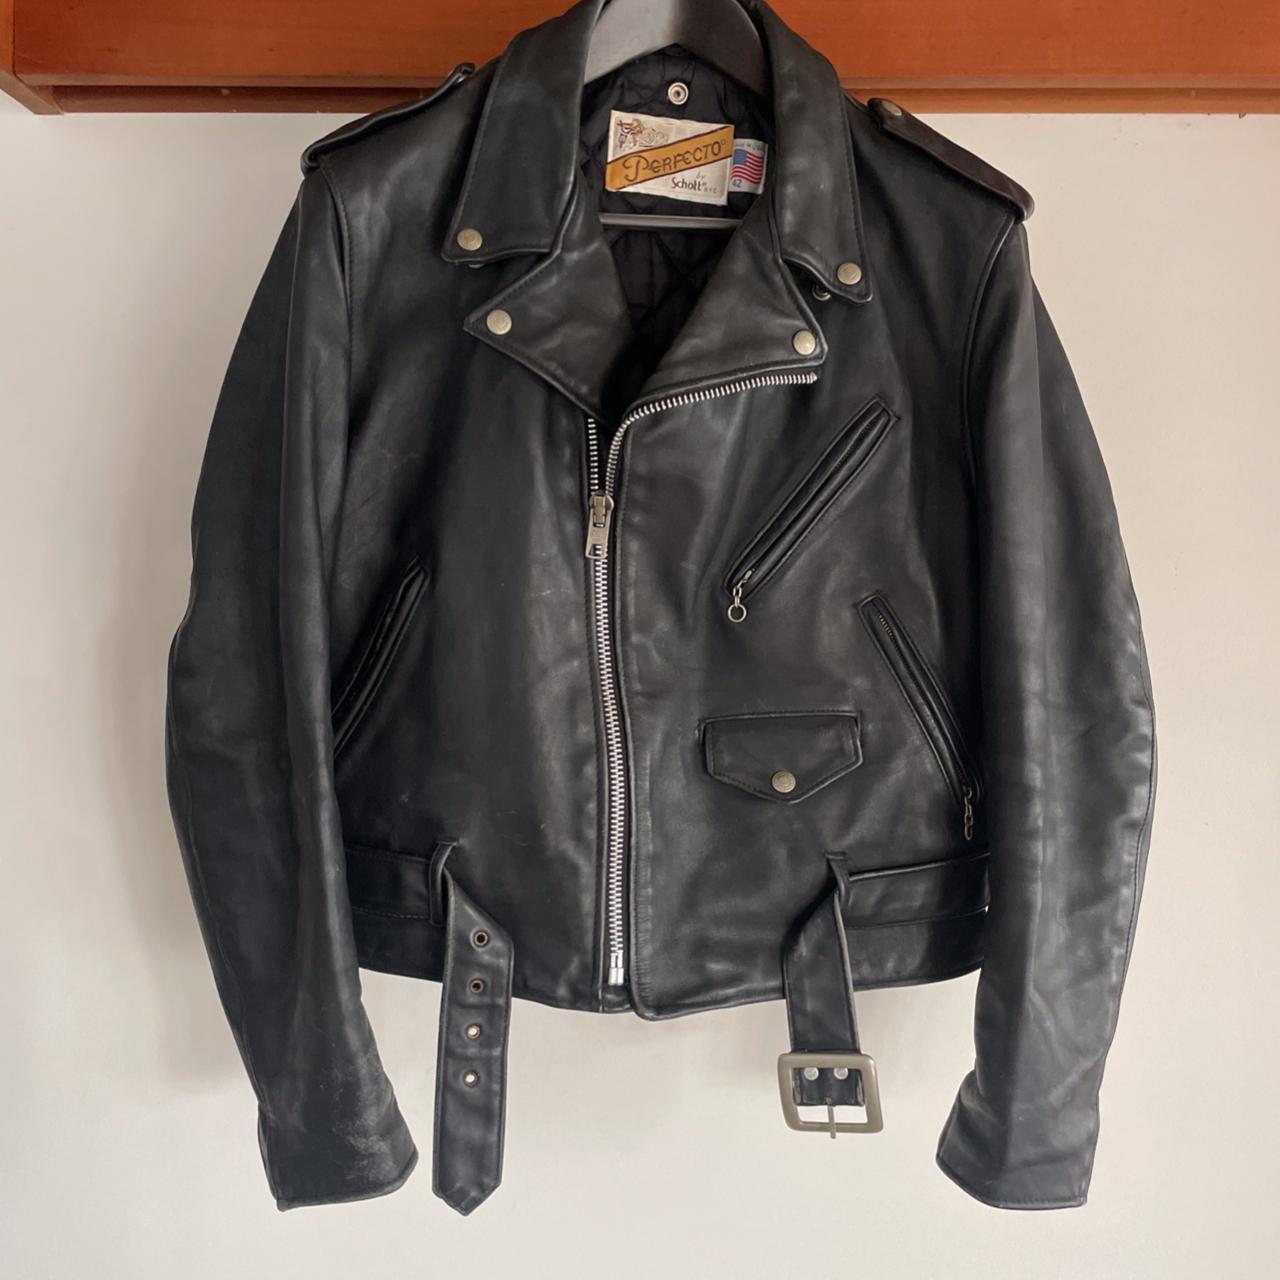 Schott Perfecto Men's Black Leather Jacket, if you... - Depop